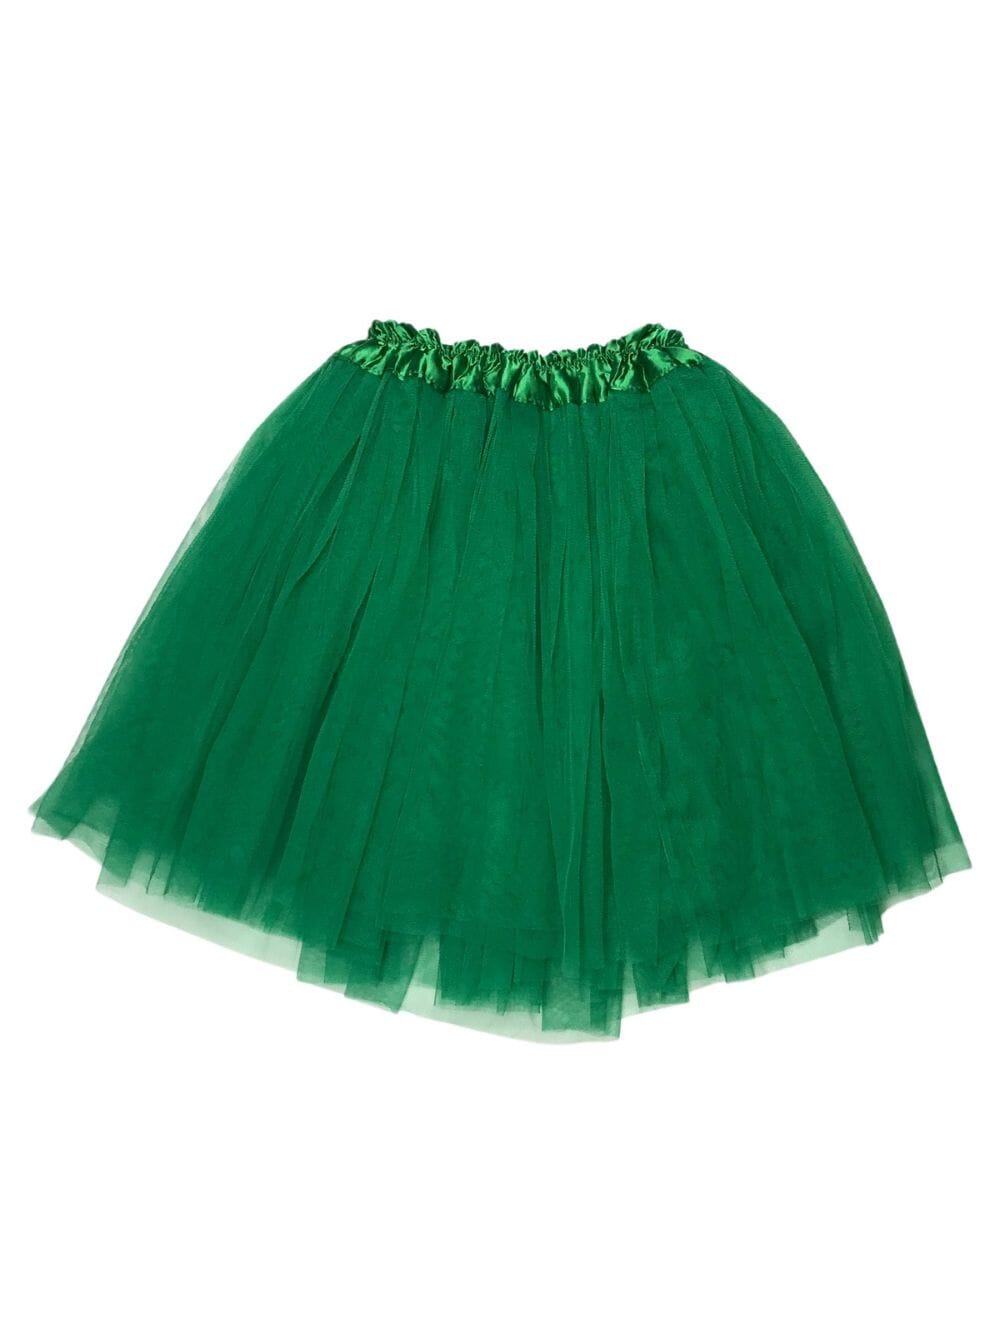 Pine Green Tutu Skirt for Adult - Women's Size 3-Layer Tulle Skirt Ballet Costume Dance Tutus - Sydney So Sweet